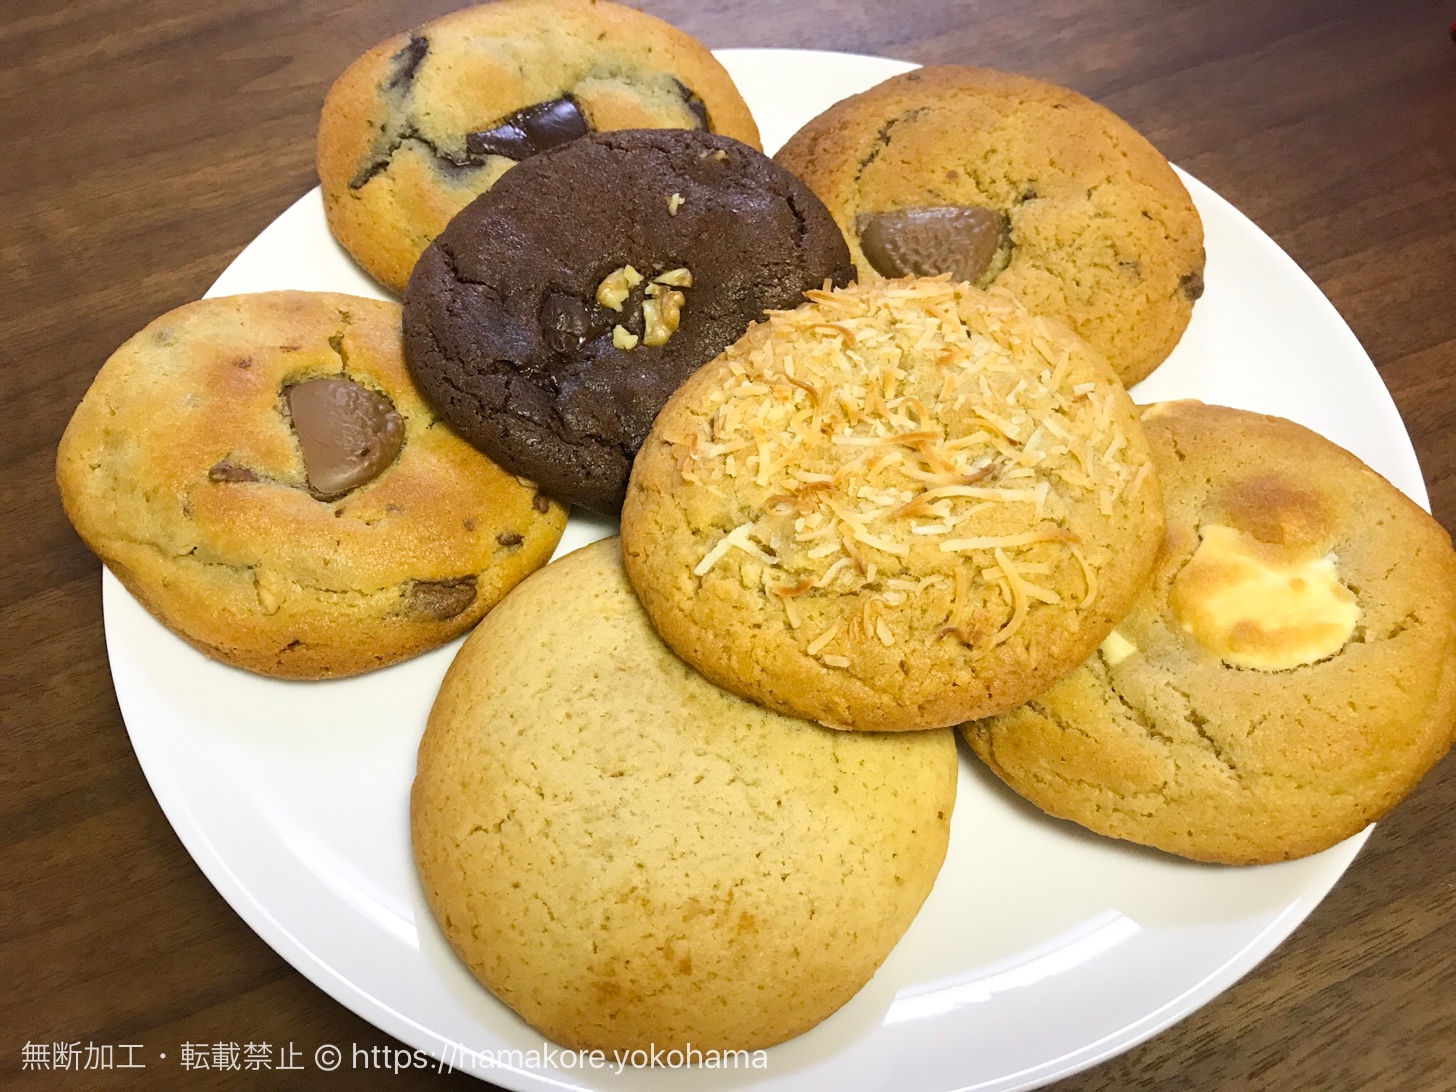 横浜 日本大通り クッキー専門店 ベンズクッキー のイギリス発クッキーは手土産に喜ばれた はまこれ横浜